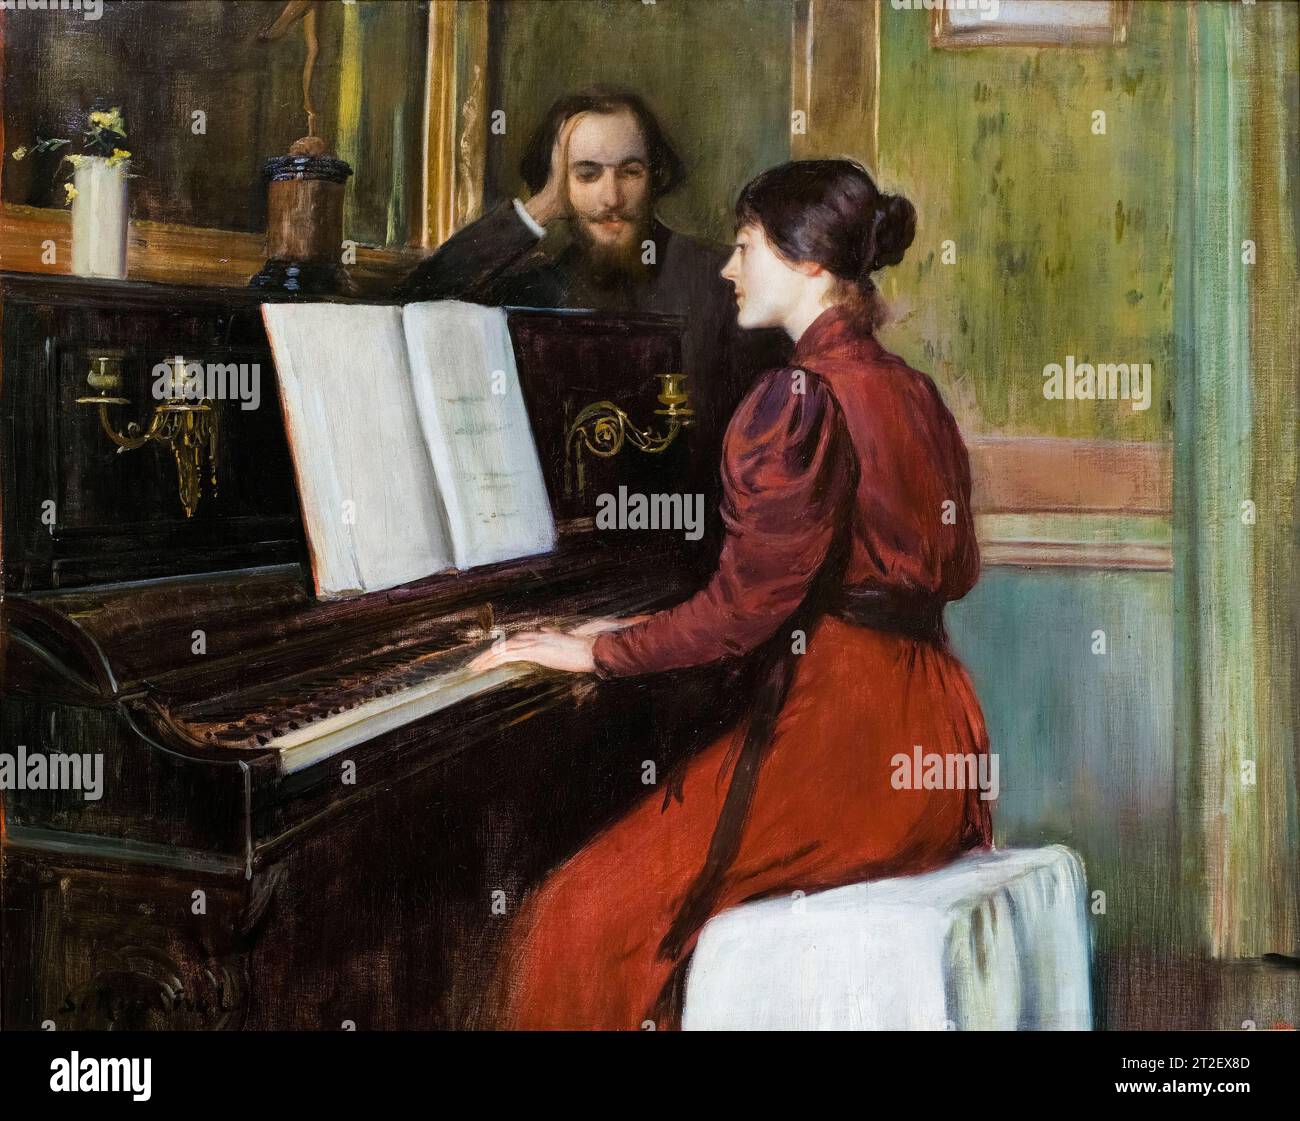 Peinture Santiago Rusinol, Une romance, huile sur toile, 1894 Banque D'Images